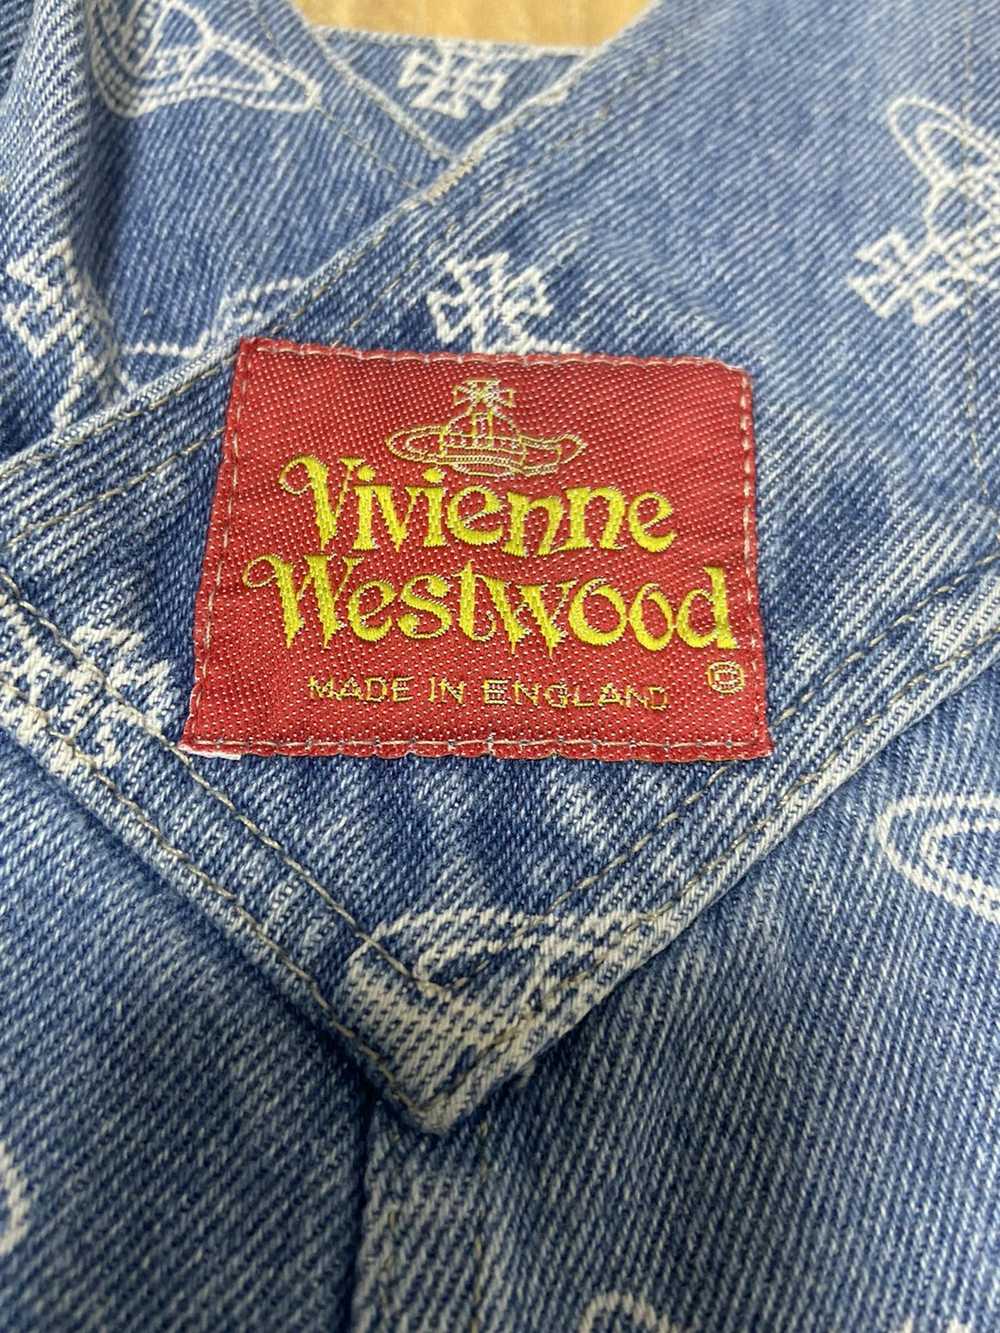 Vivienne Westwood Vivienne westwood VINTAGE 80s 9… - image 3